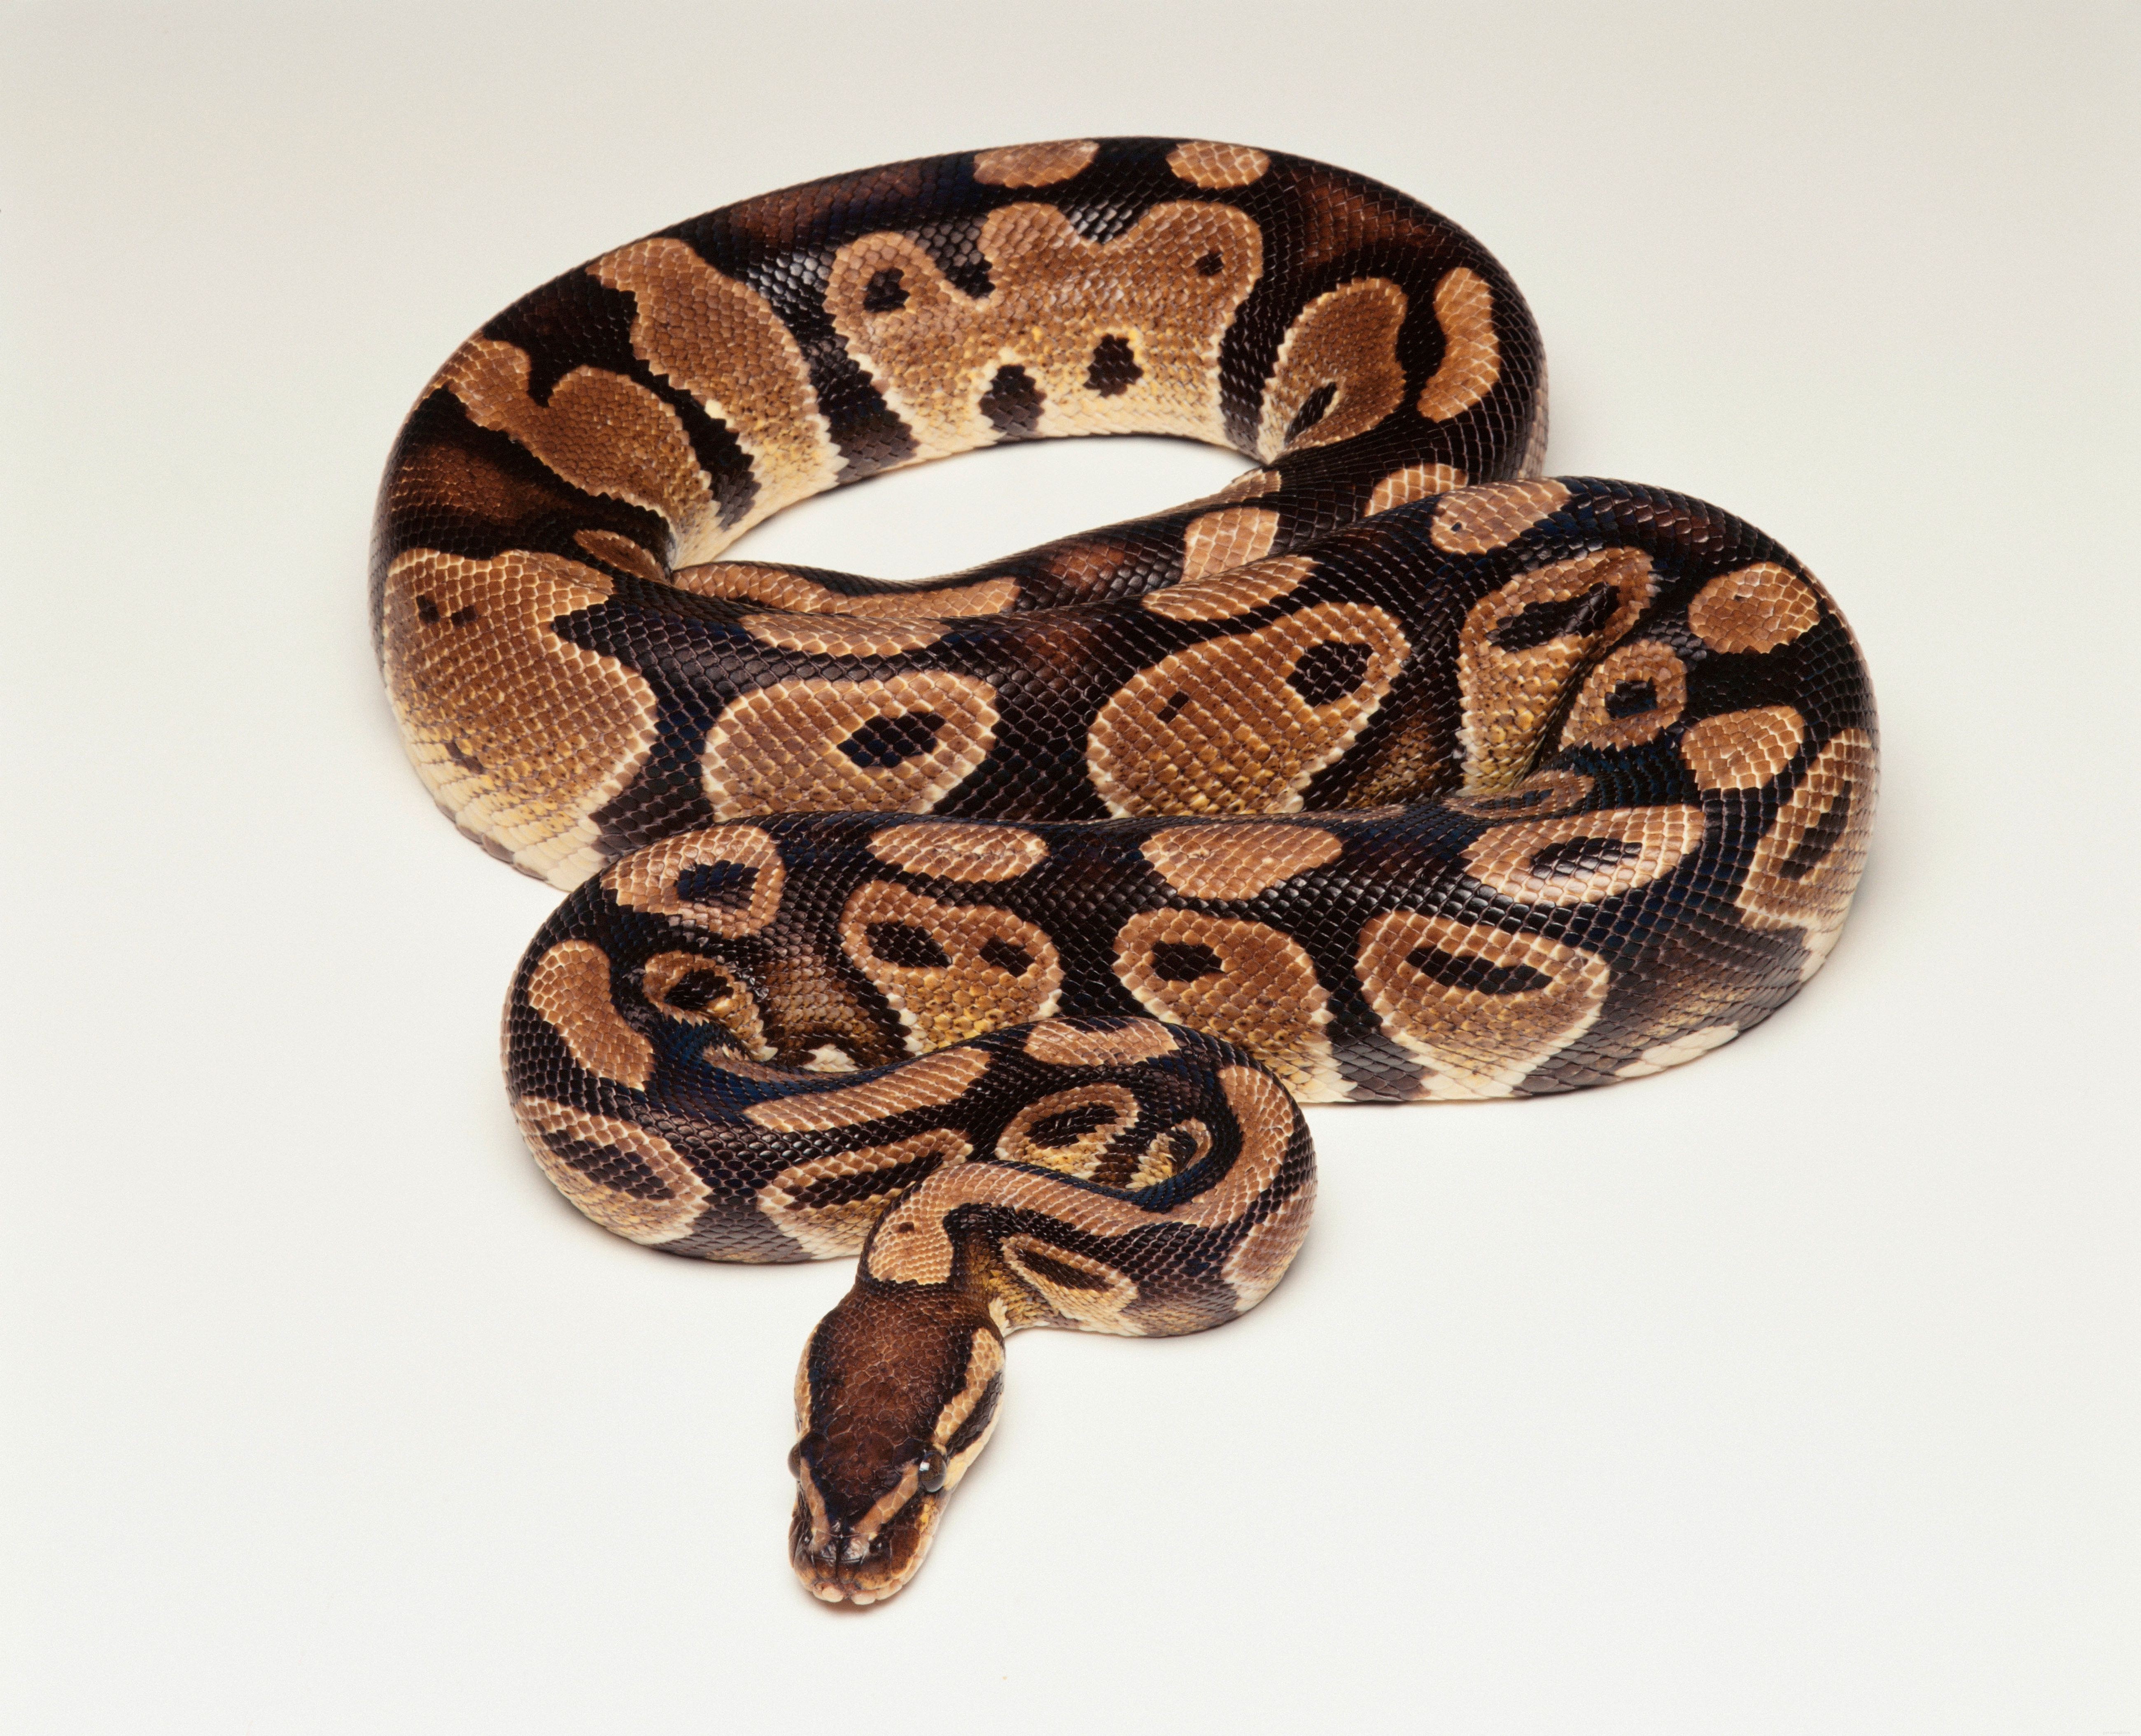 ペットとして一般的に飼われているヘビの種 